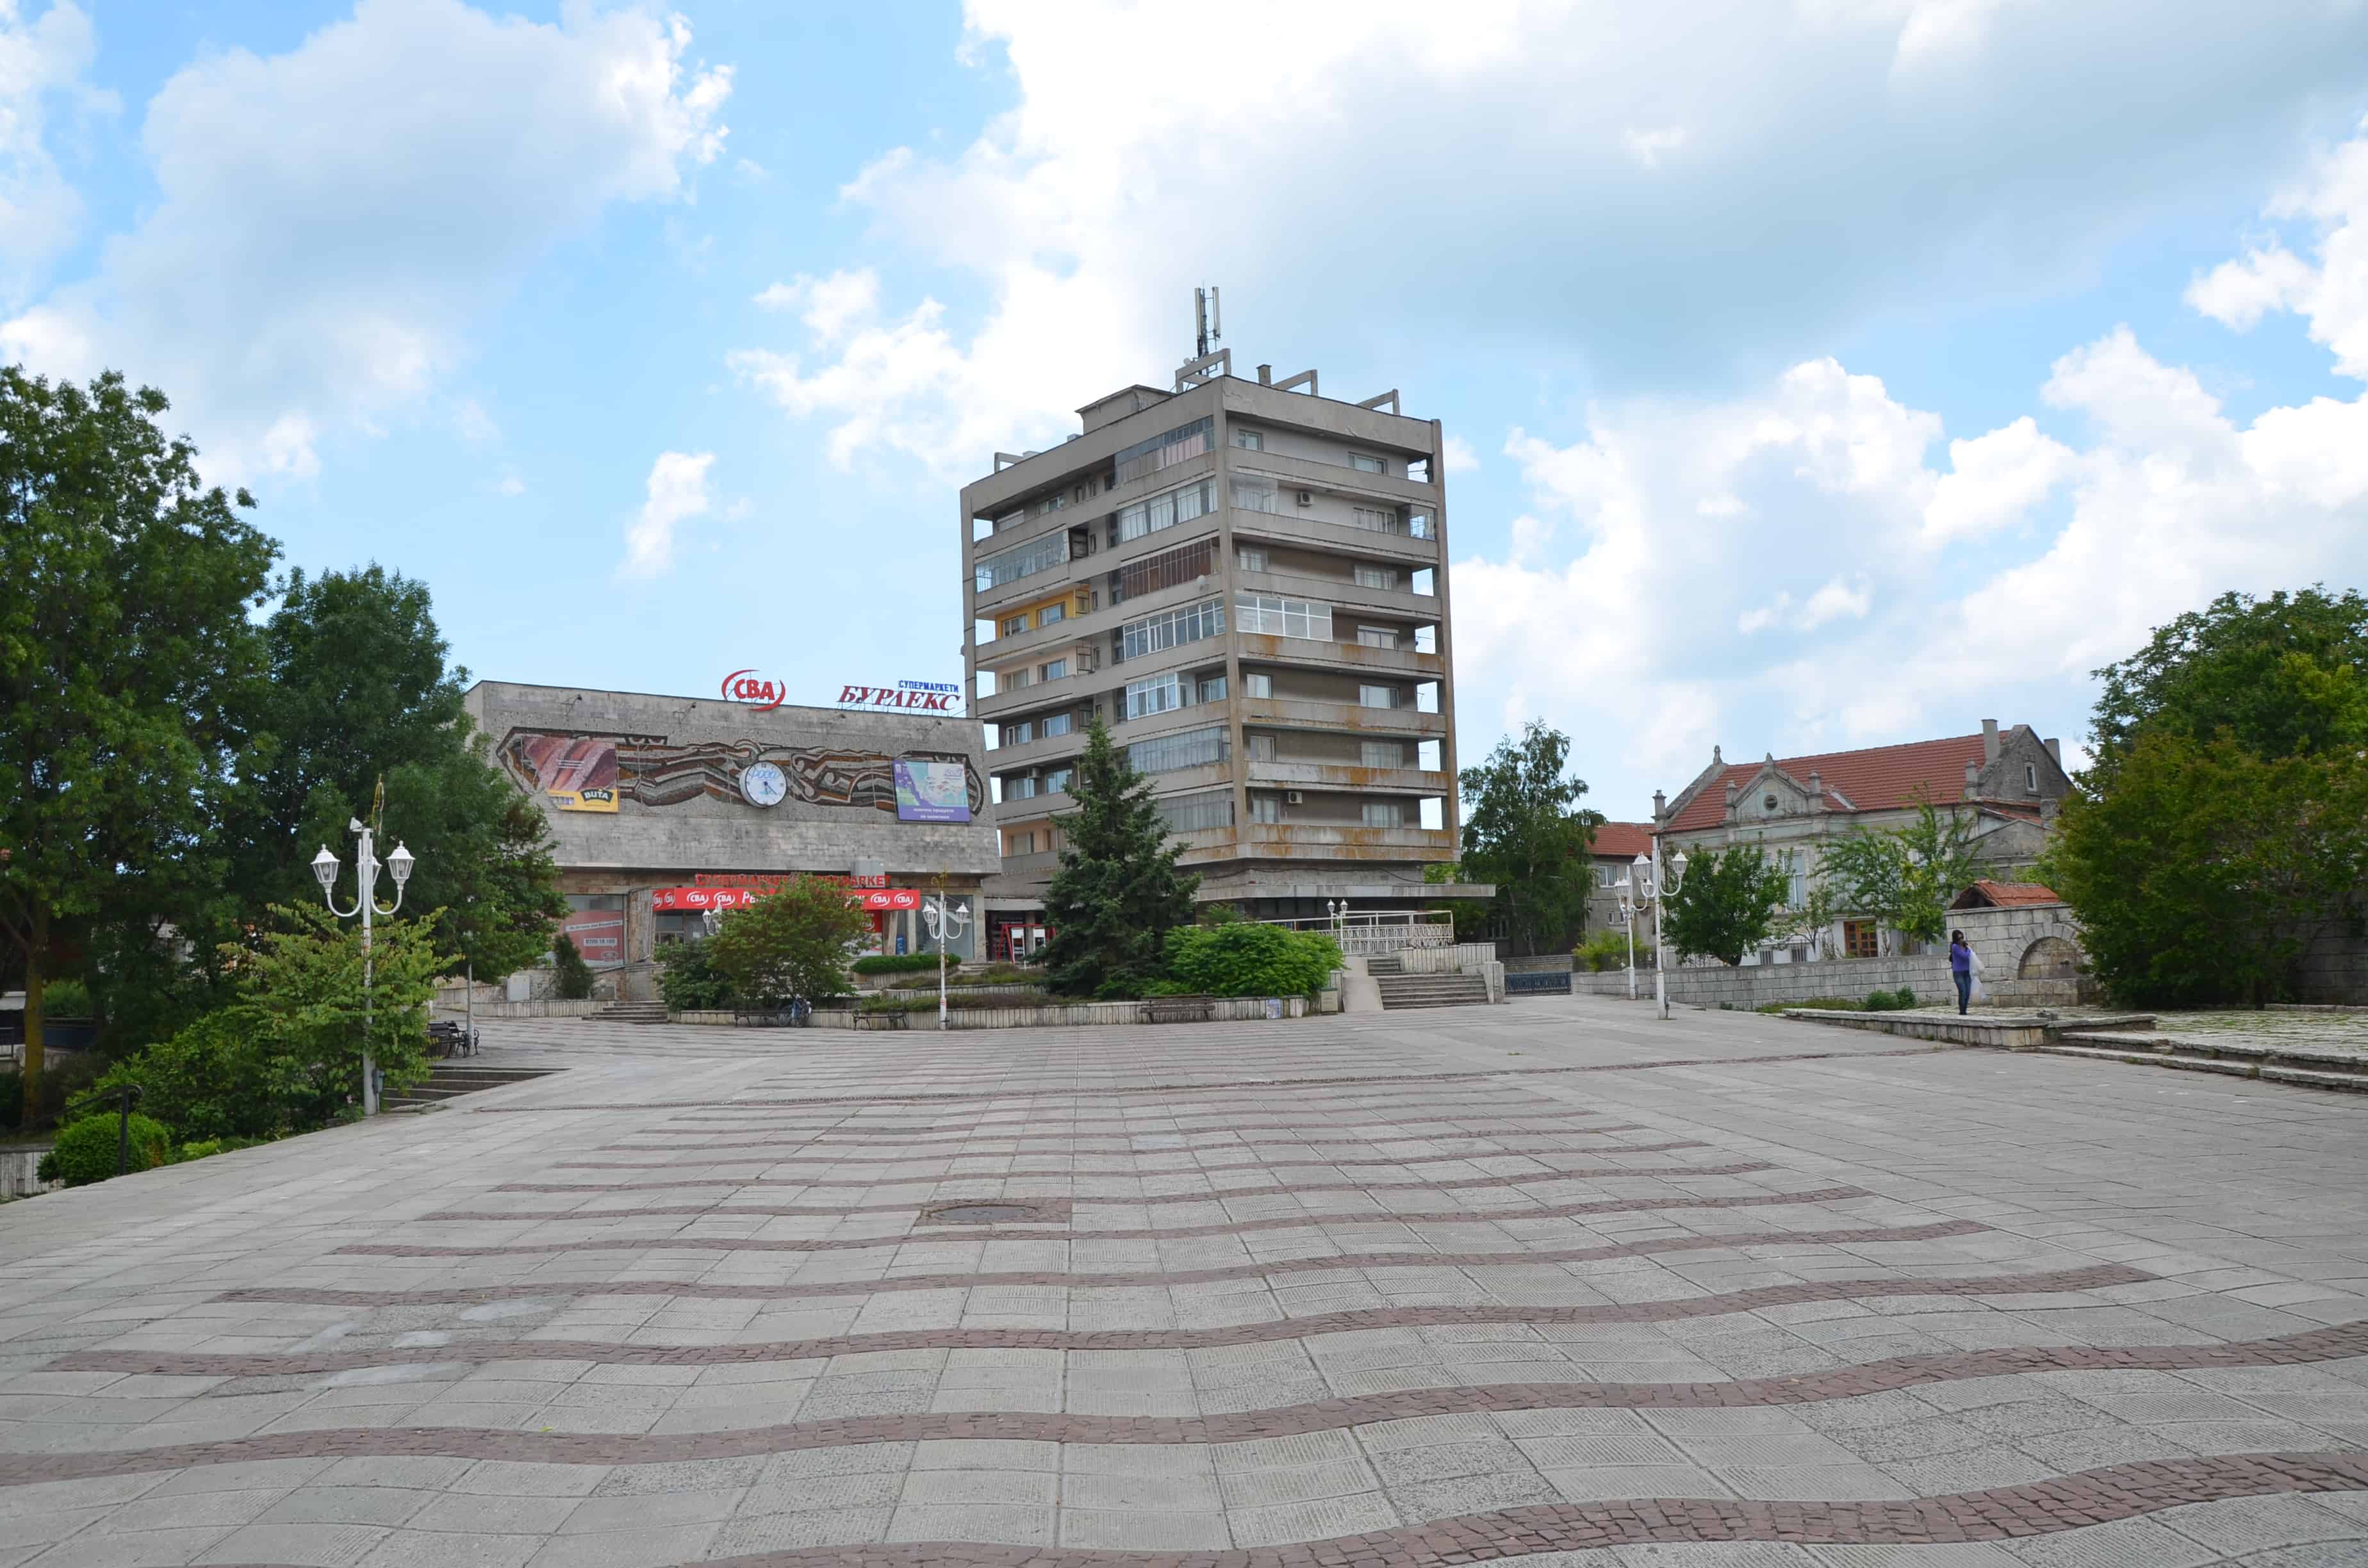 Square in Kavarna, Bulgaria